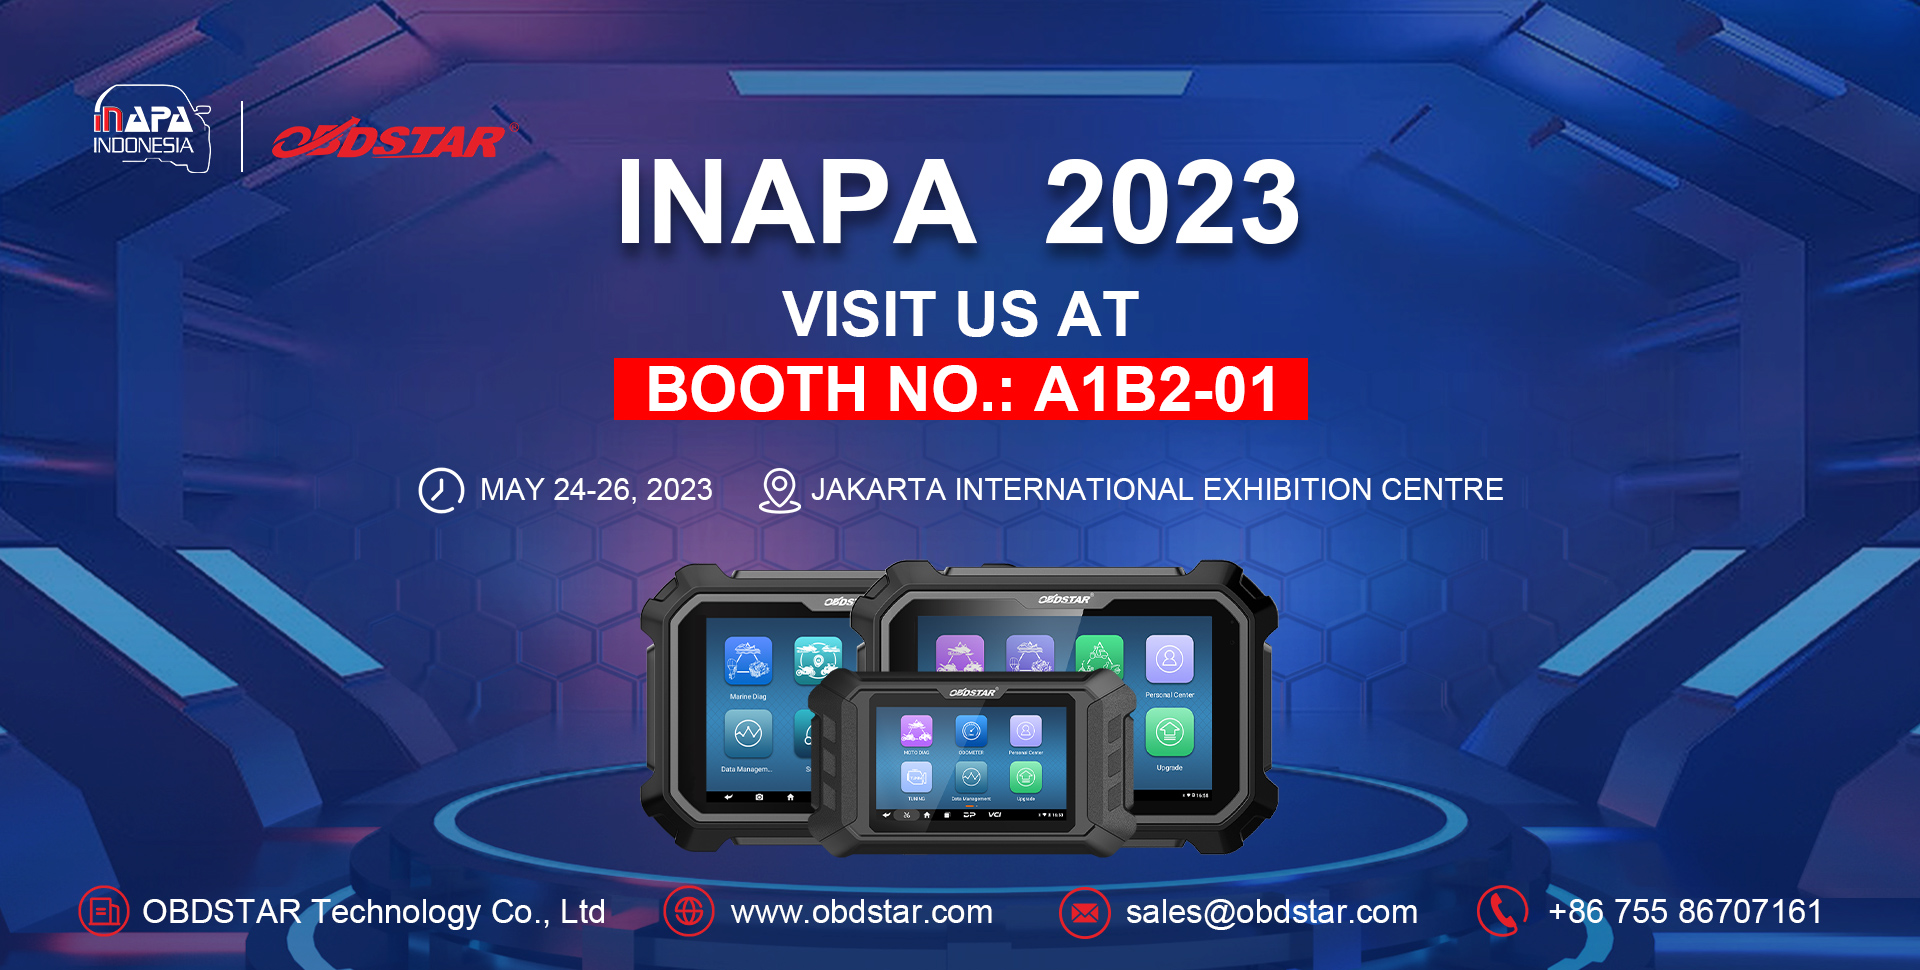 Invitation for Indonesia INAPA 2023